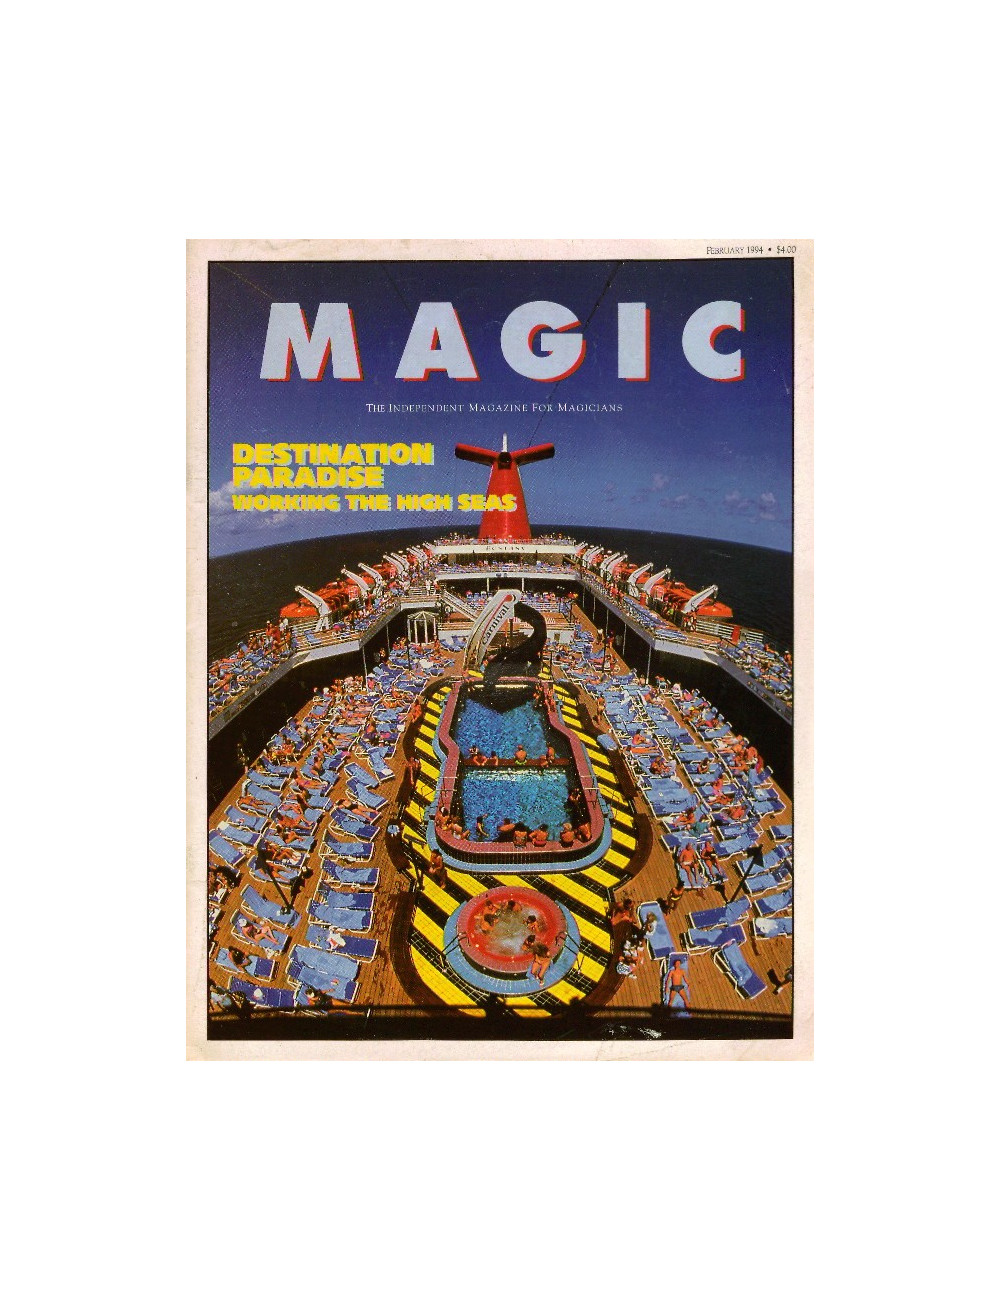 MAGIC MAGAZINE FÉVRIER 1994